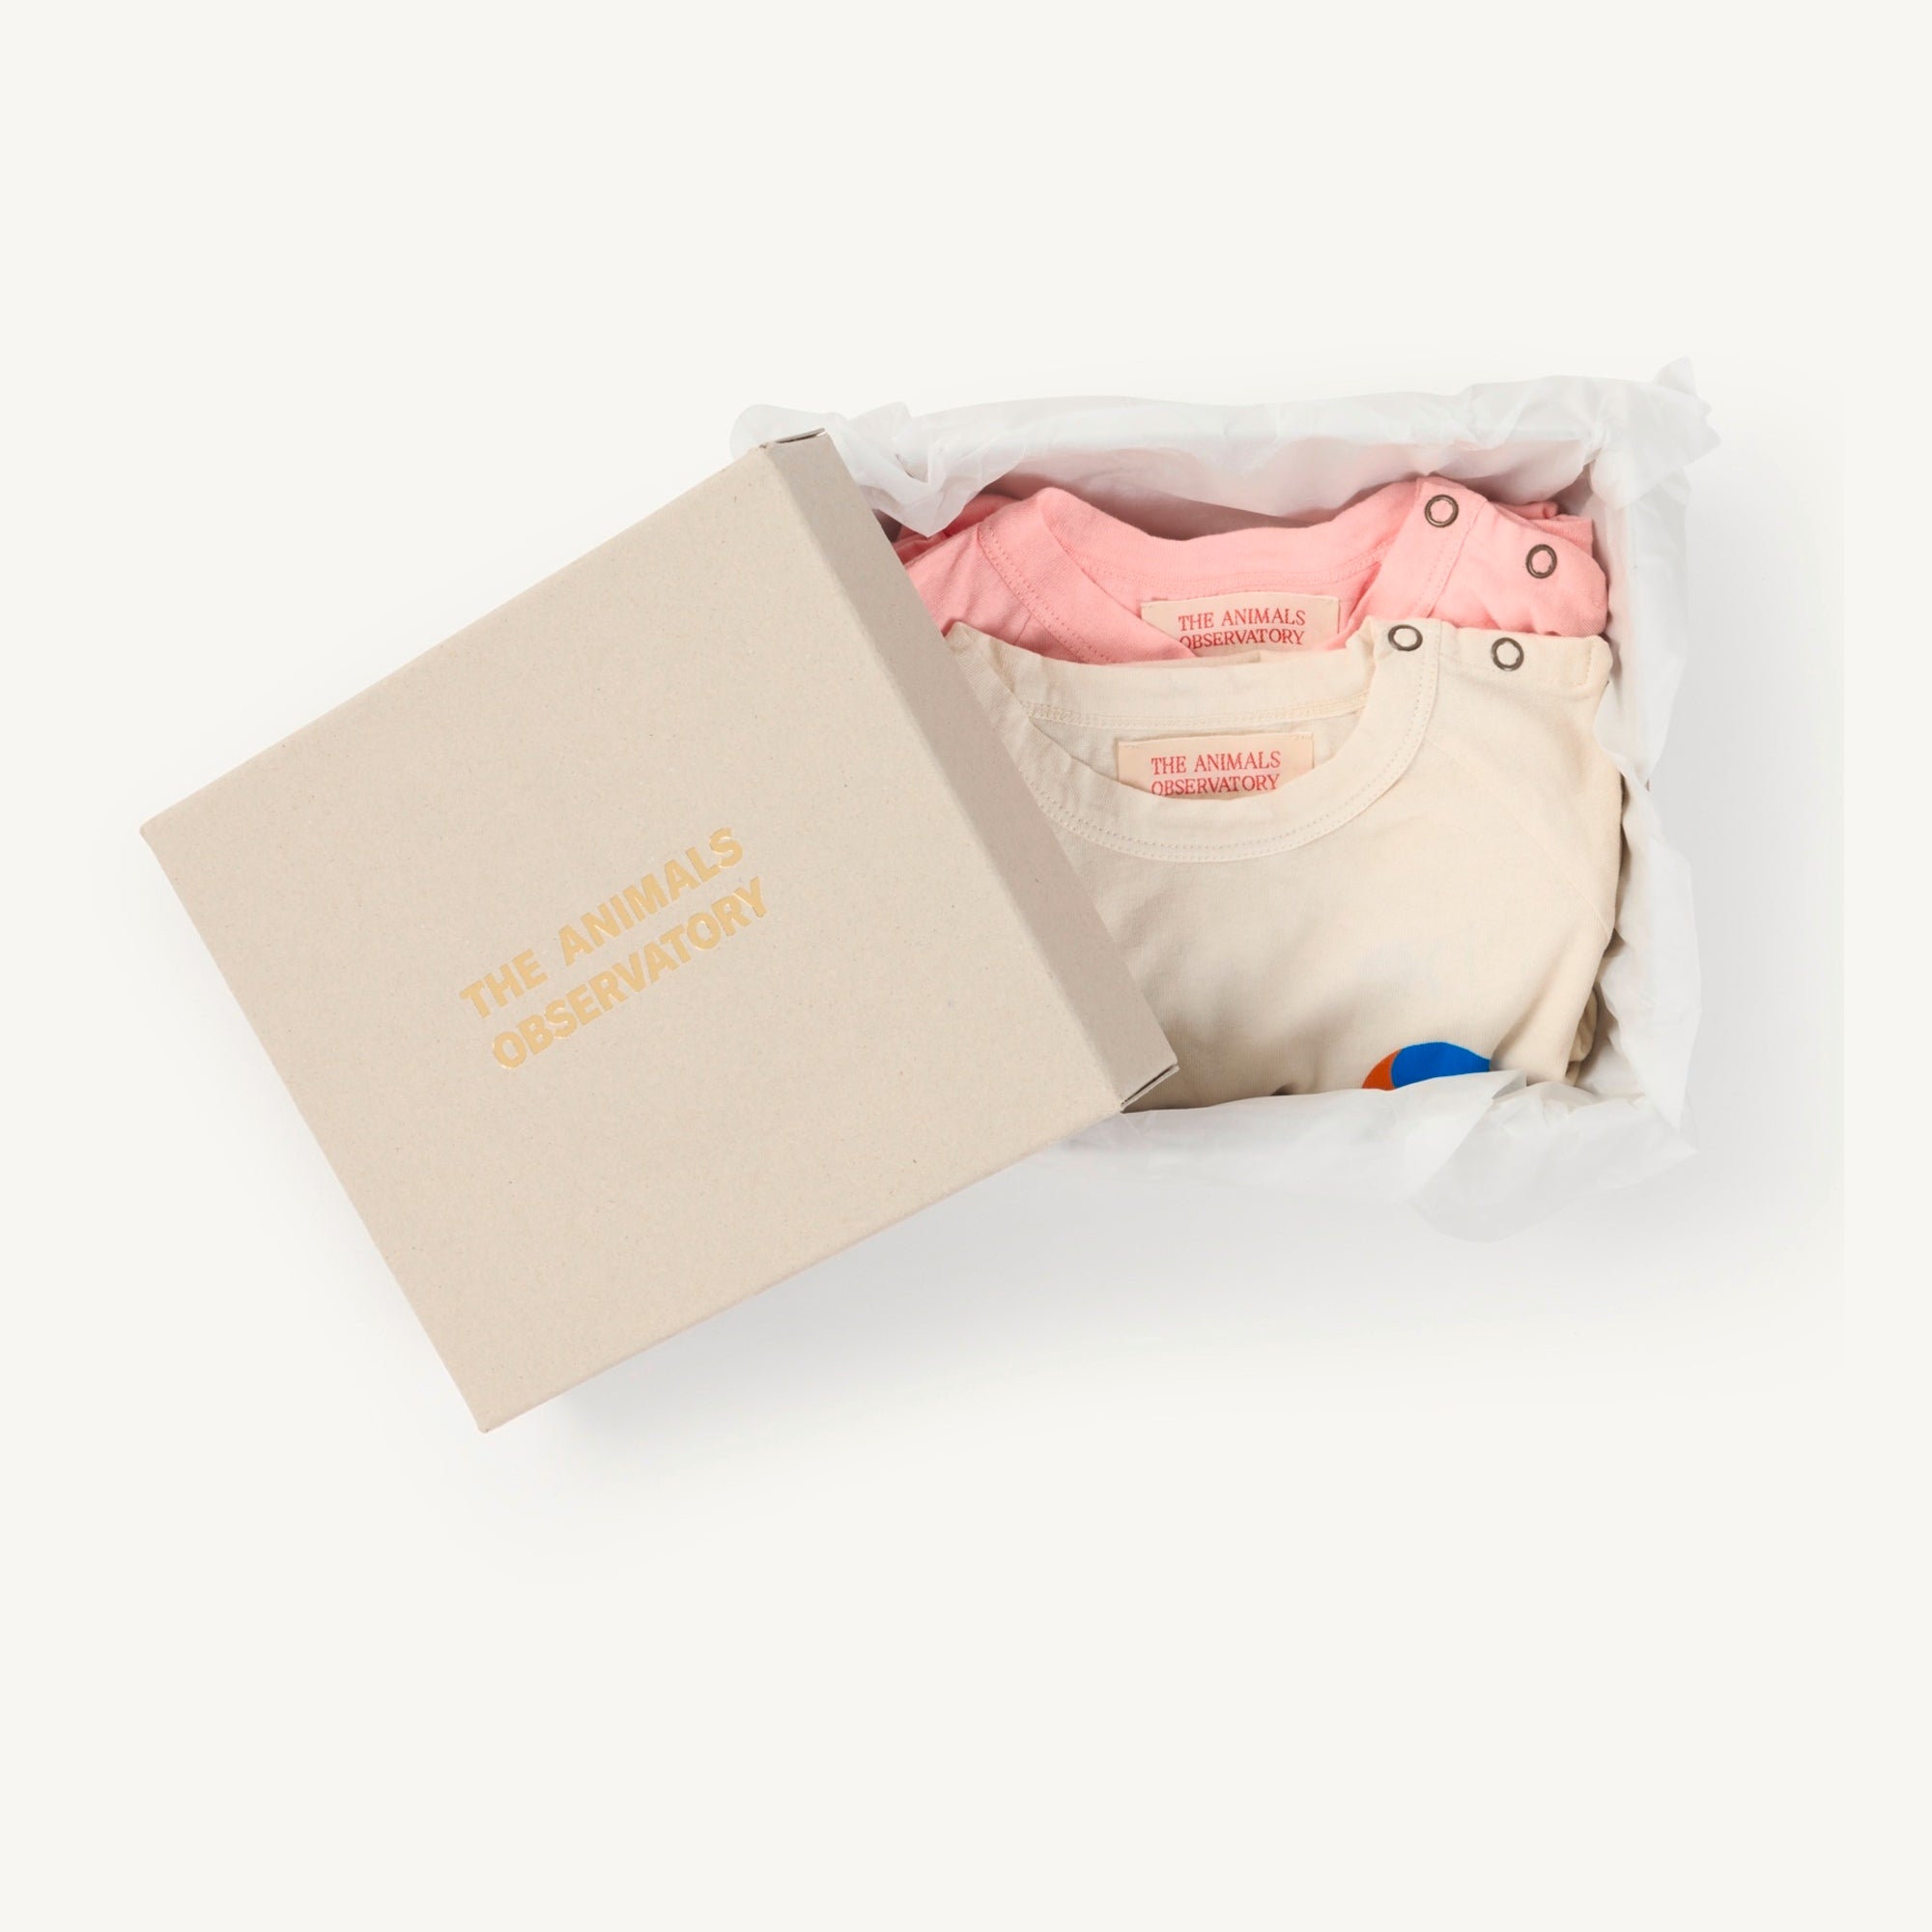 Baby Girls Pink Printed Cotton Babysuit Set